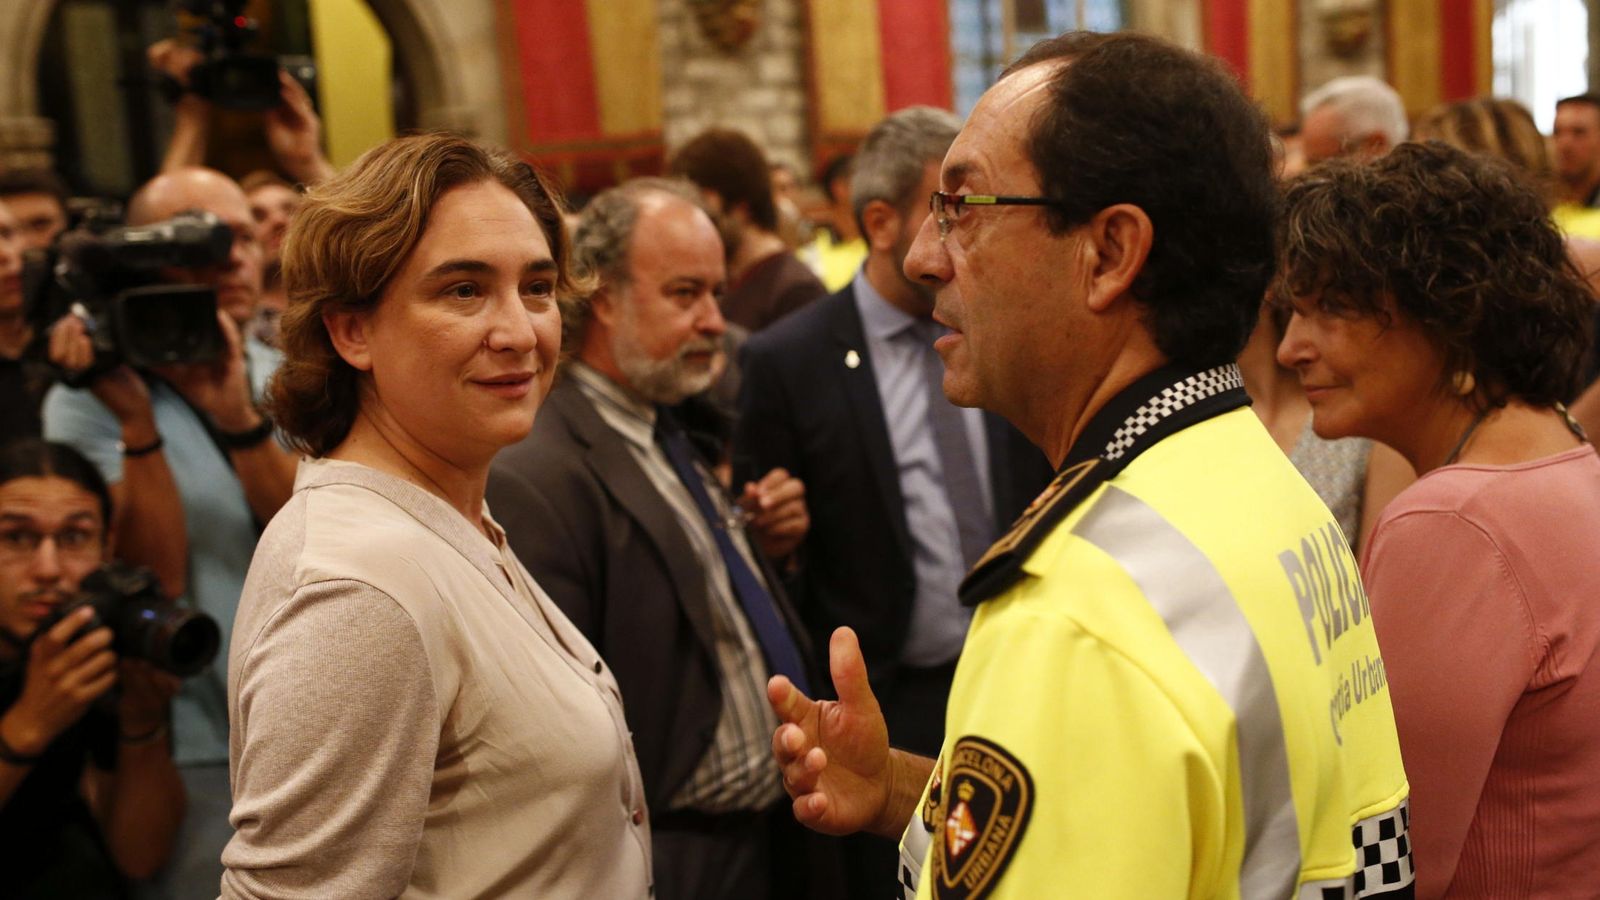 Foto: La alcaldesa de Barcelona, Ada Colau (i), saluda al jefe de la Guardia Urbana, el intendente Evelio Vázquez (d), durante el acto de bienvenida a los nuevos agentes de la 87 promoción de la Guardia Urbana de Barcelona. (EFE)